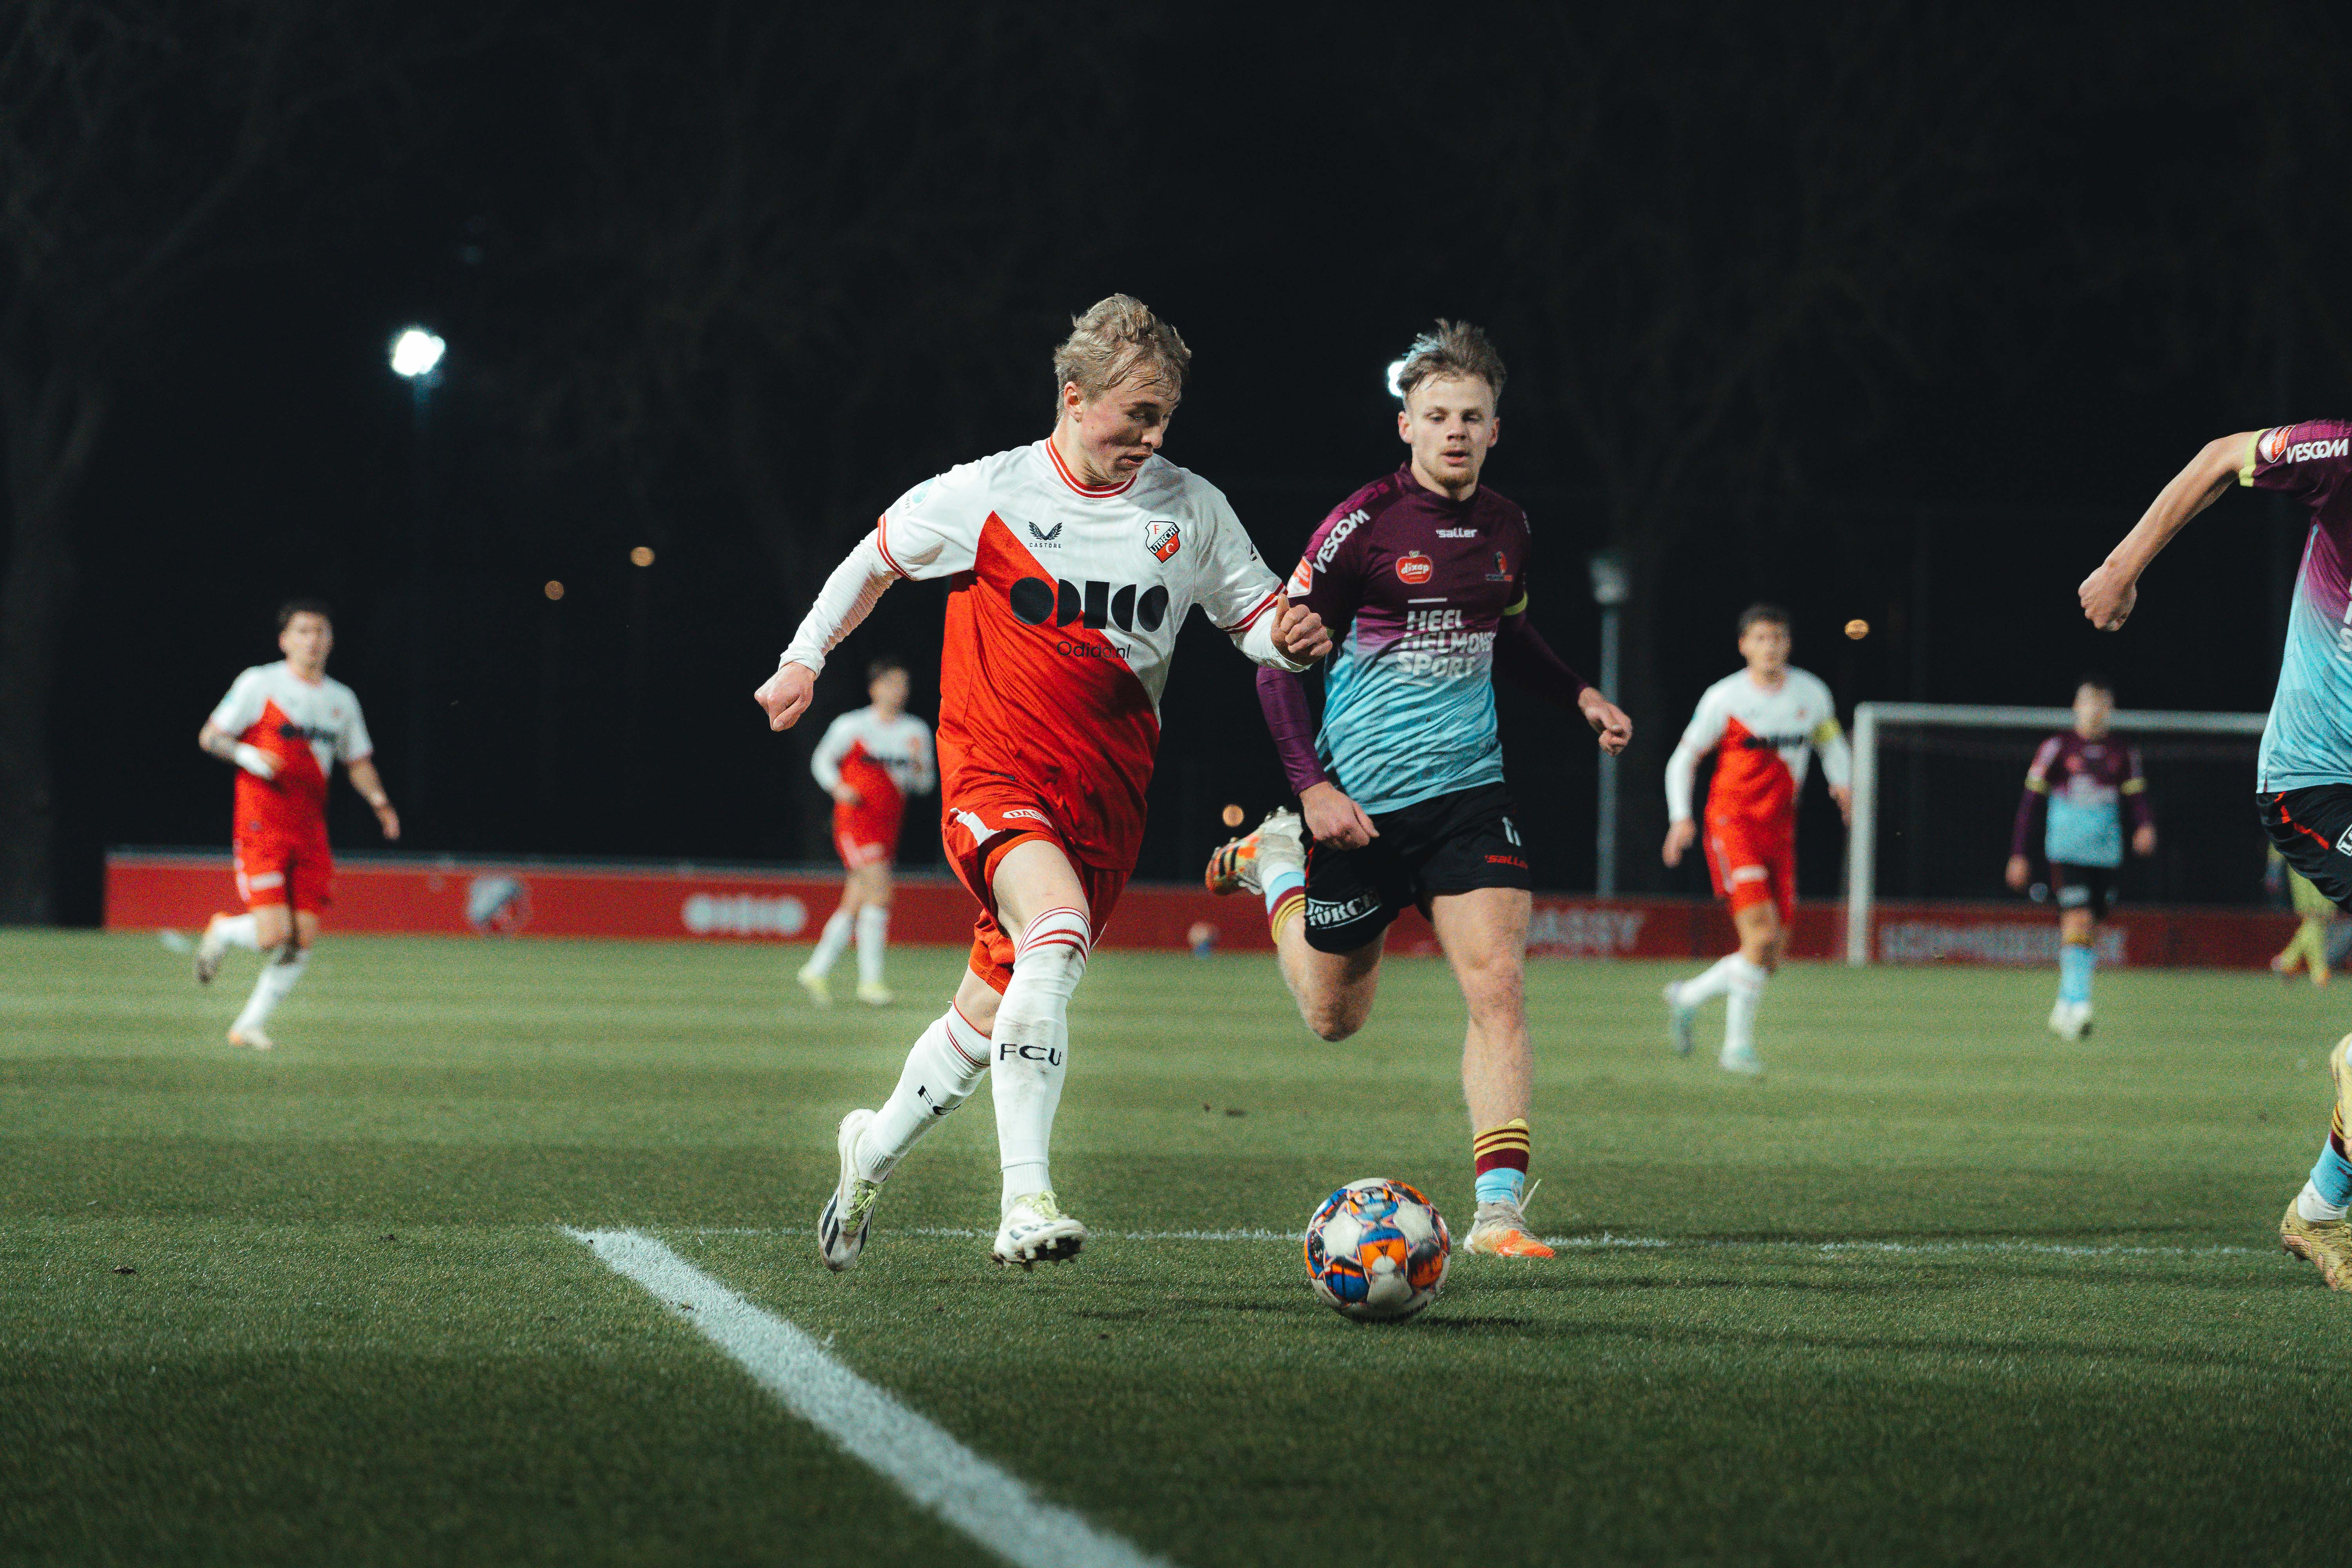 Nederlaag voor Jong FC Utrecht tegen Helmond Sport